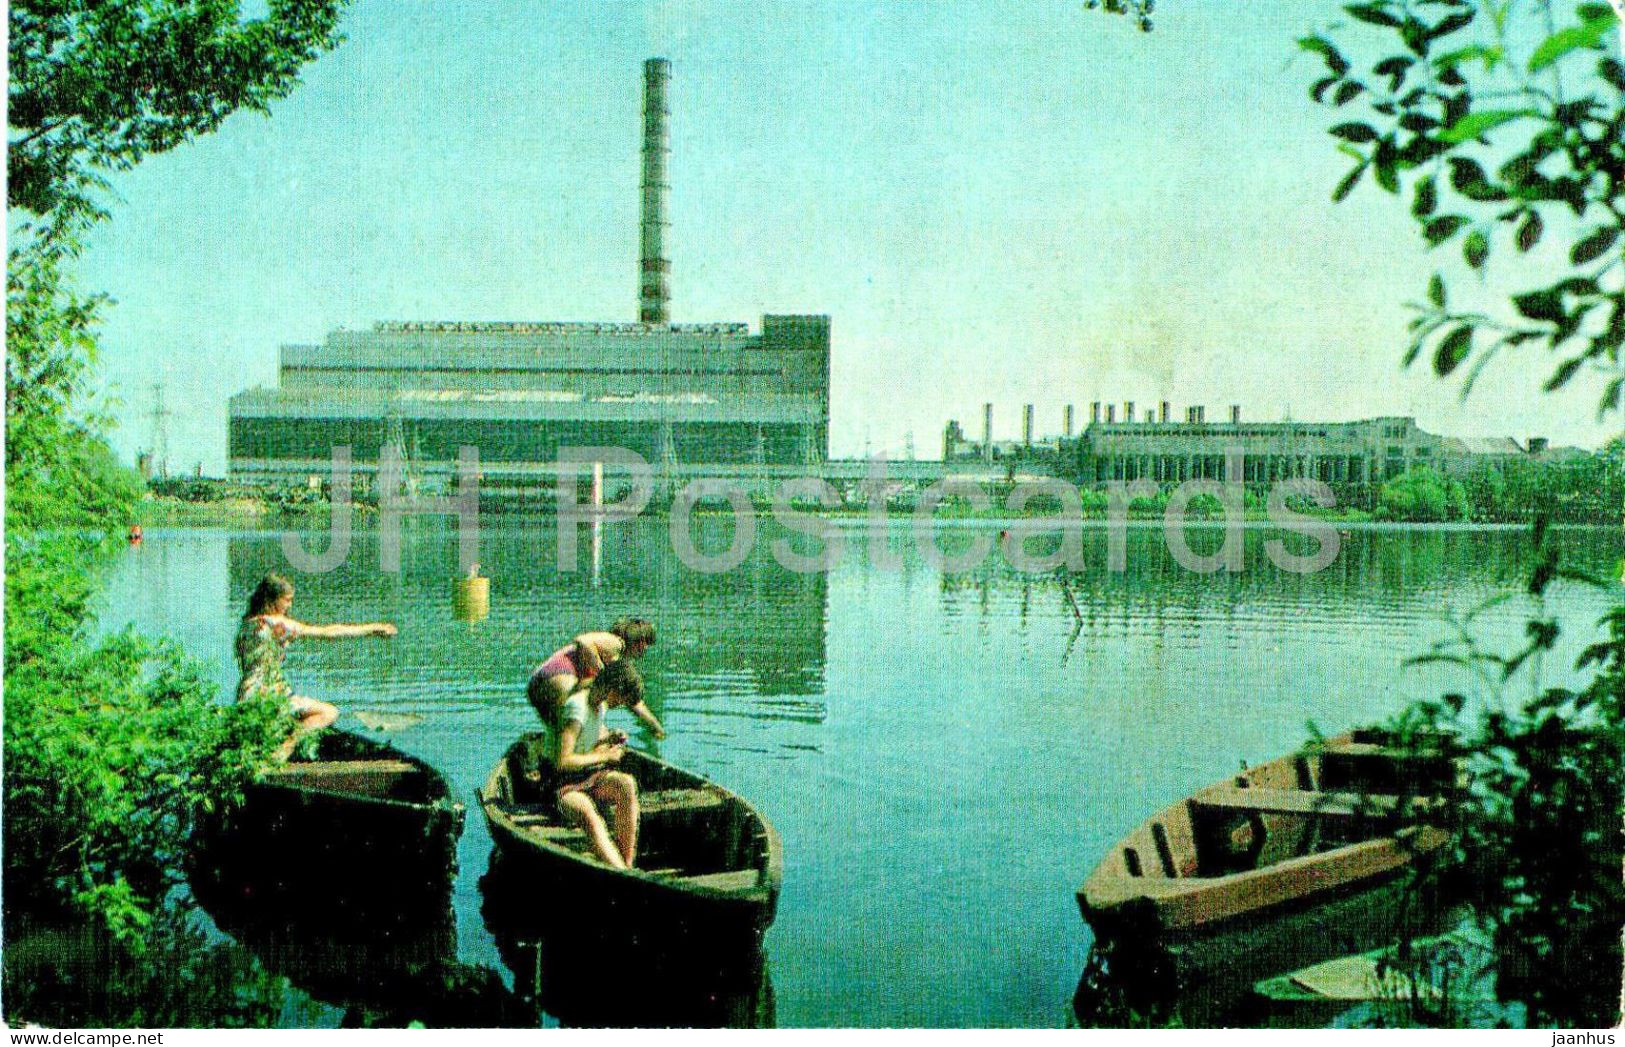 Shatura - Power Station On Peat - Boat - Turist - 1975 - Russia USSR - Unused - Russland